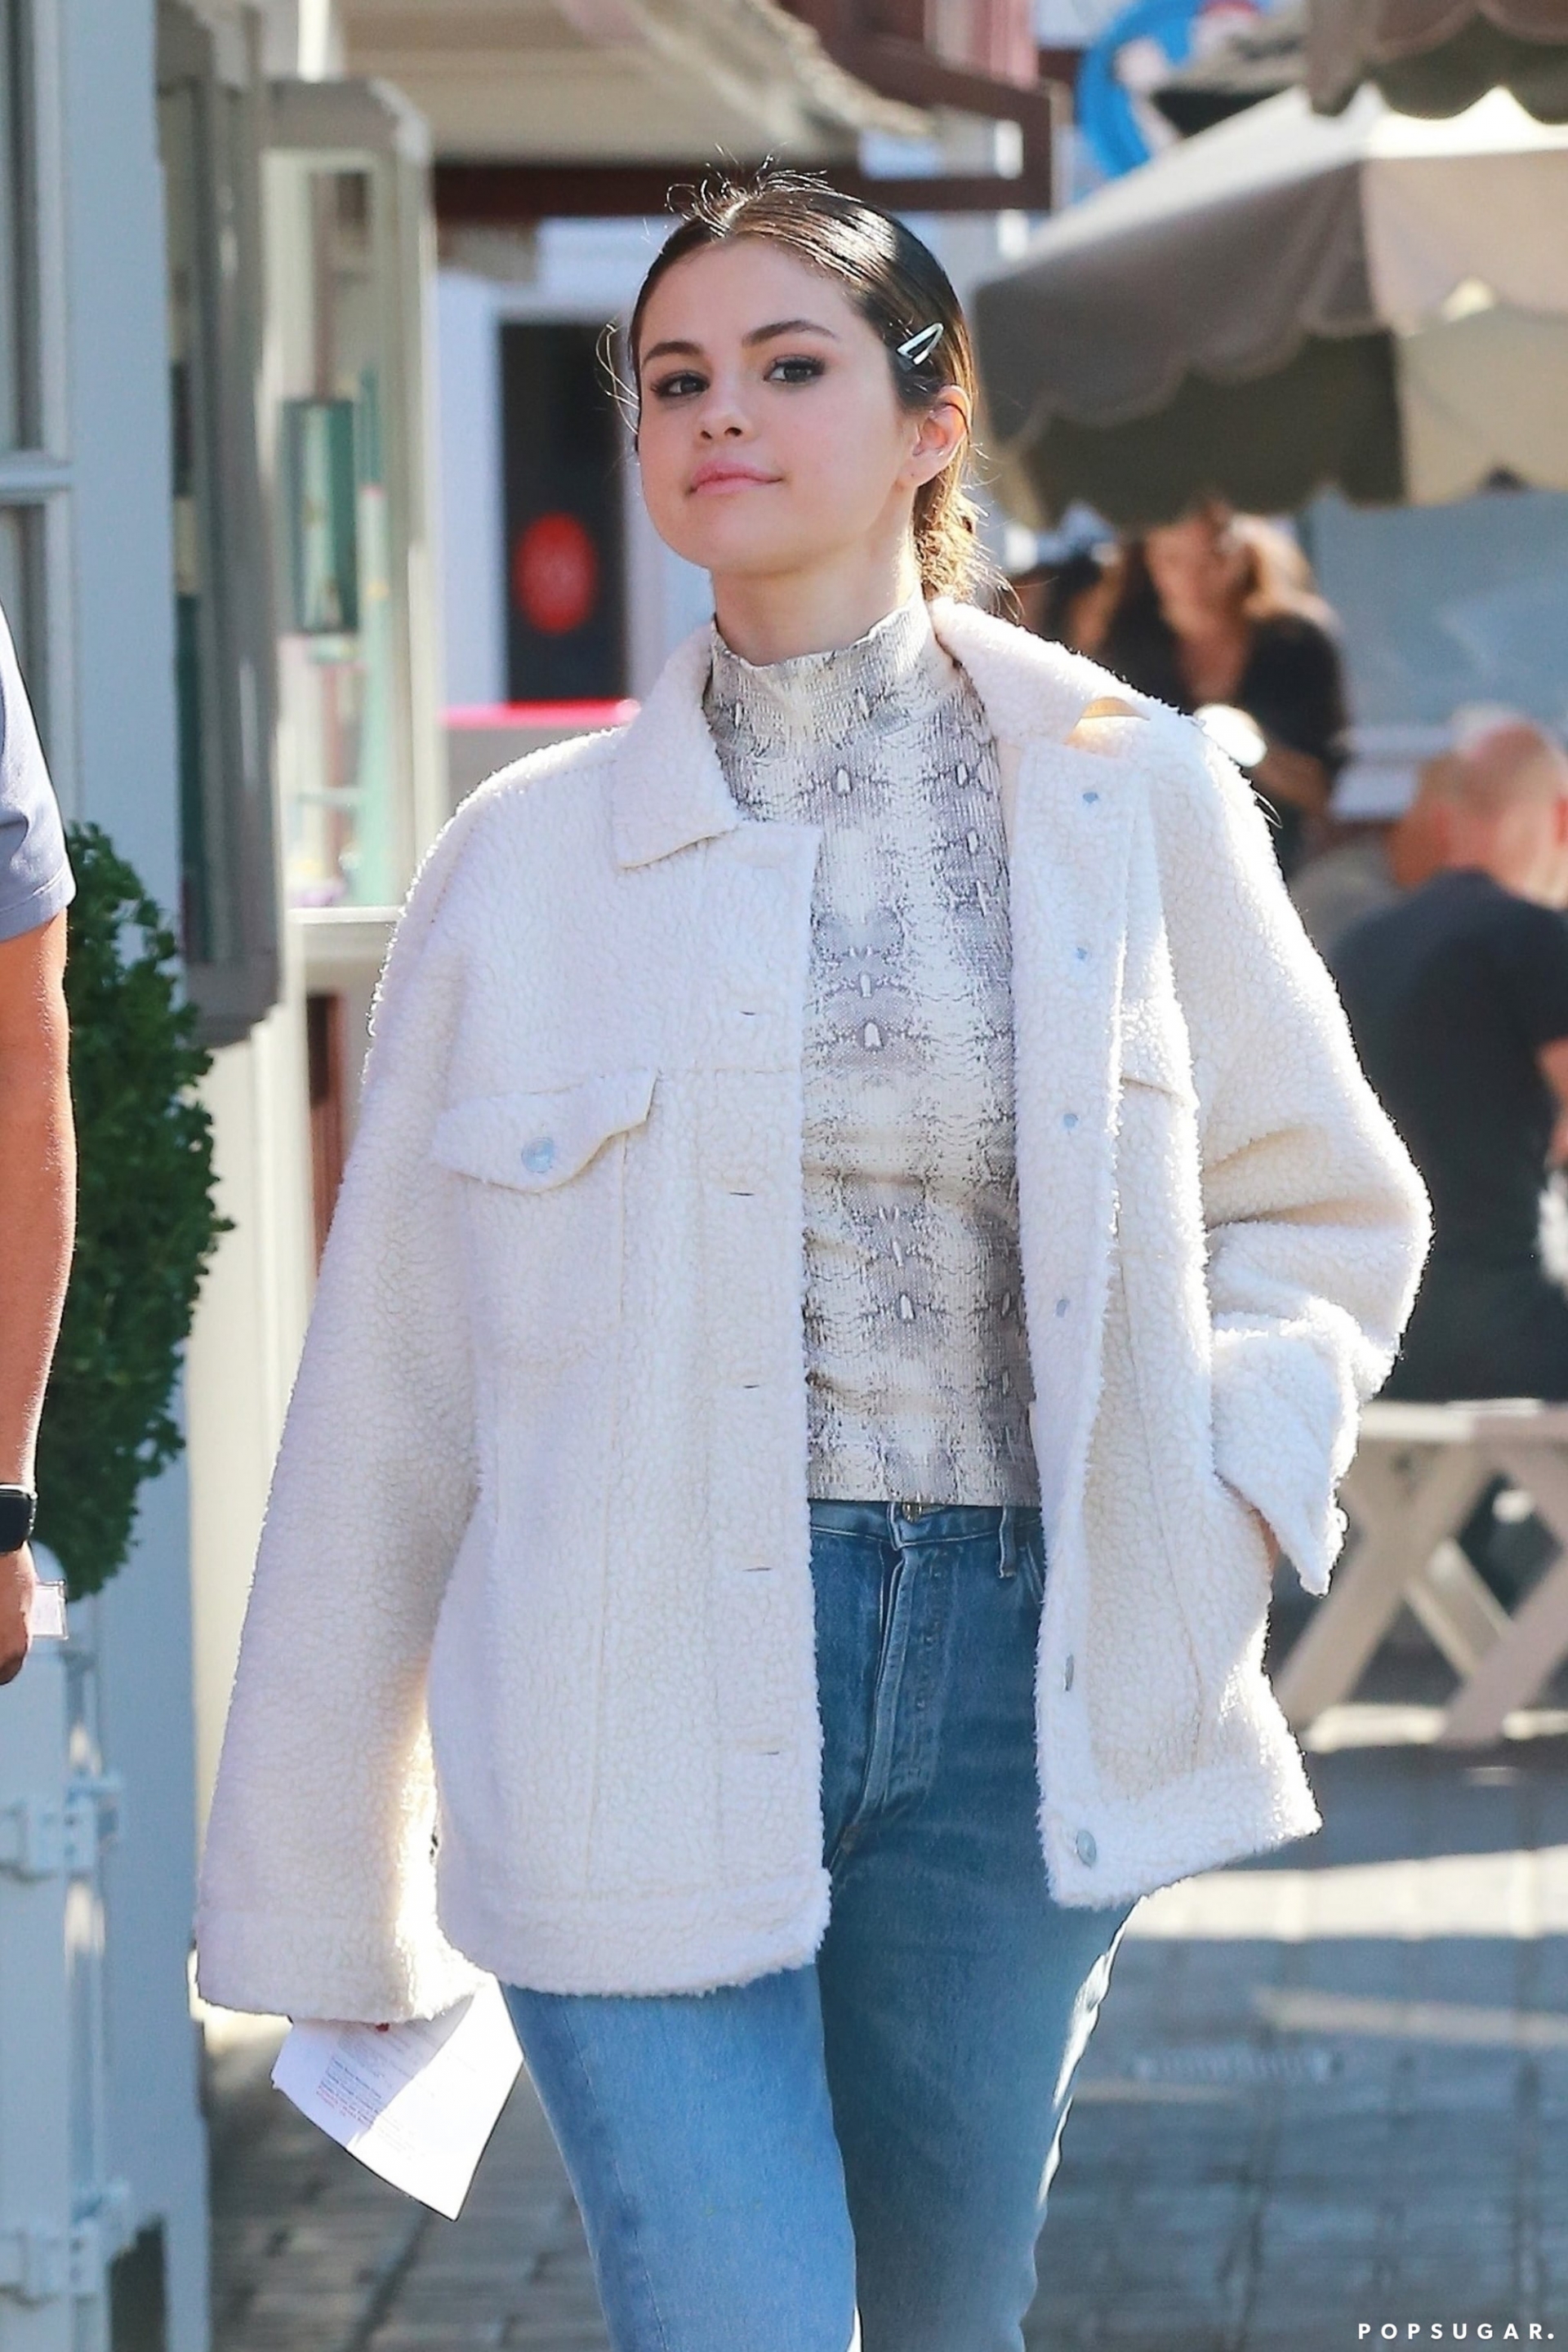 Với áo cao cổ họa tiết, bí kíp iện đẹp chính là kết hợp với những items trơn màu. Và outfit gồm áo cổ lọ họa tiết da rắn + áo bông trắng của Selena Gomez không chỉ đẹp mắt mà còn rất trẻ trung.